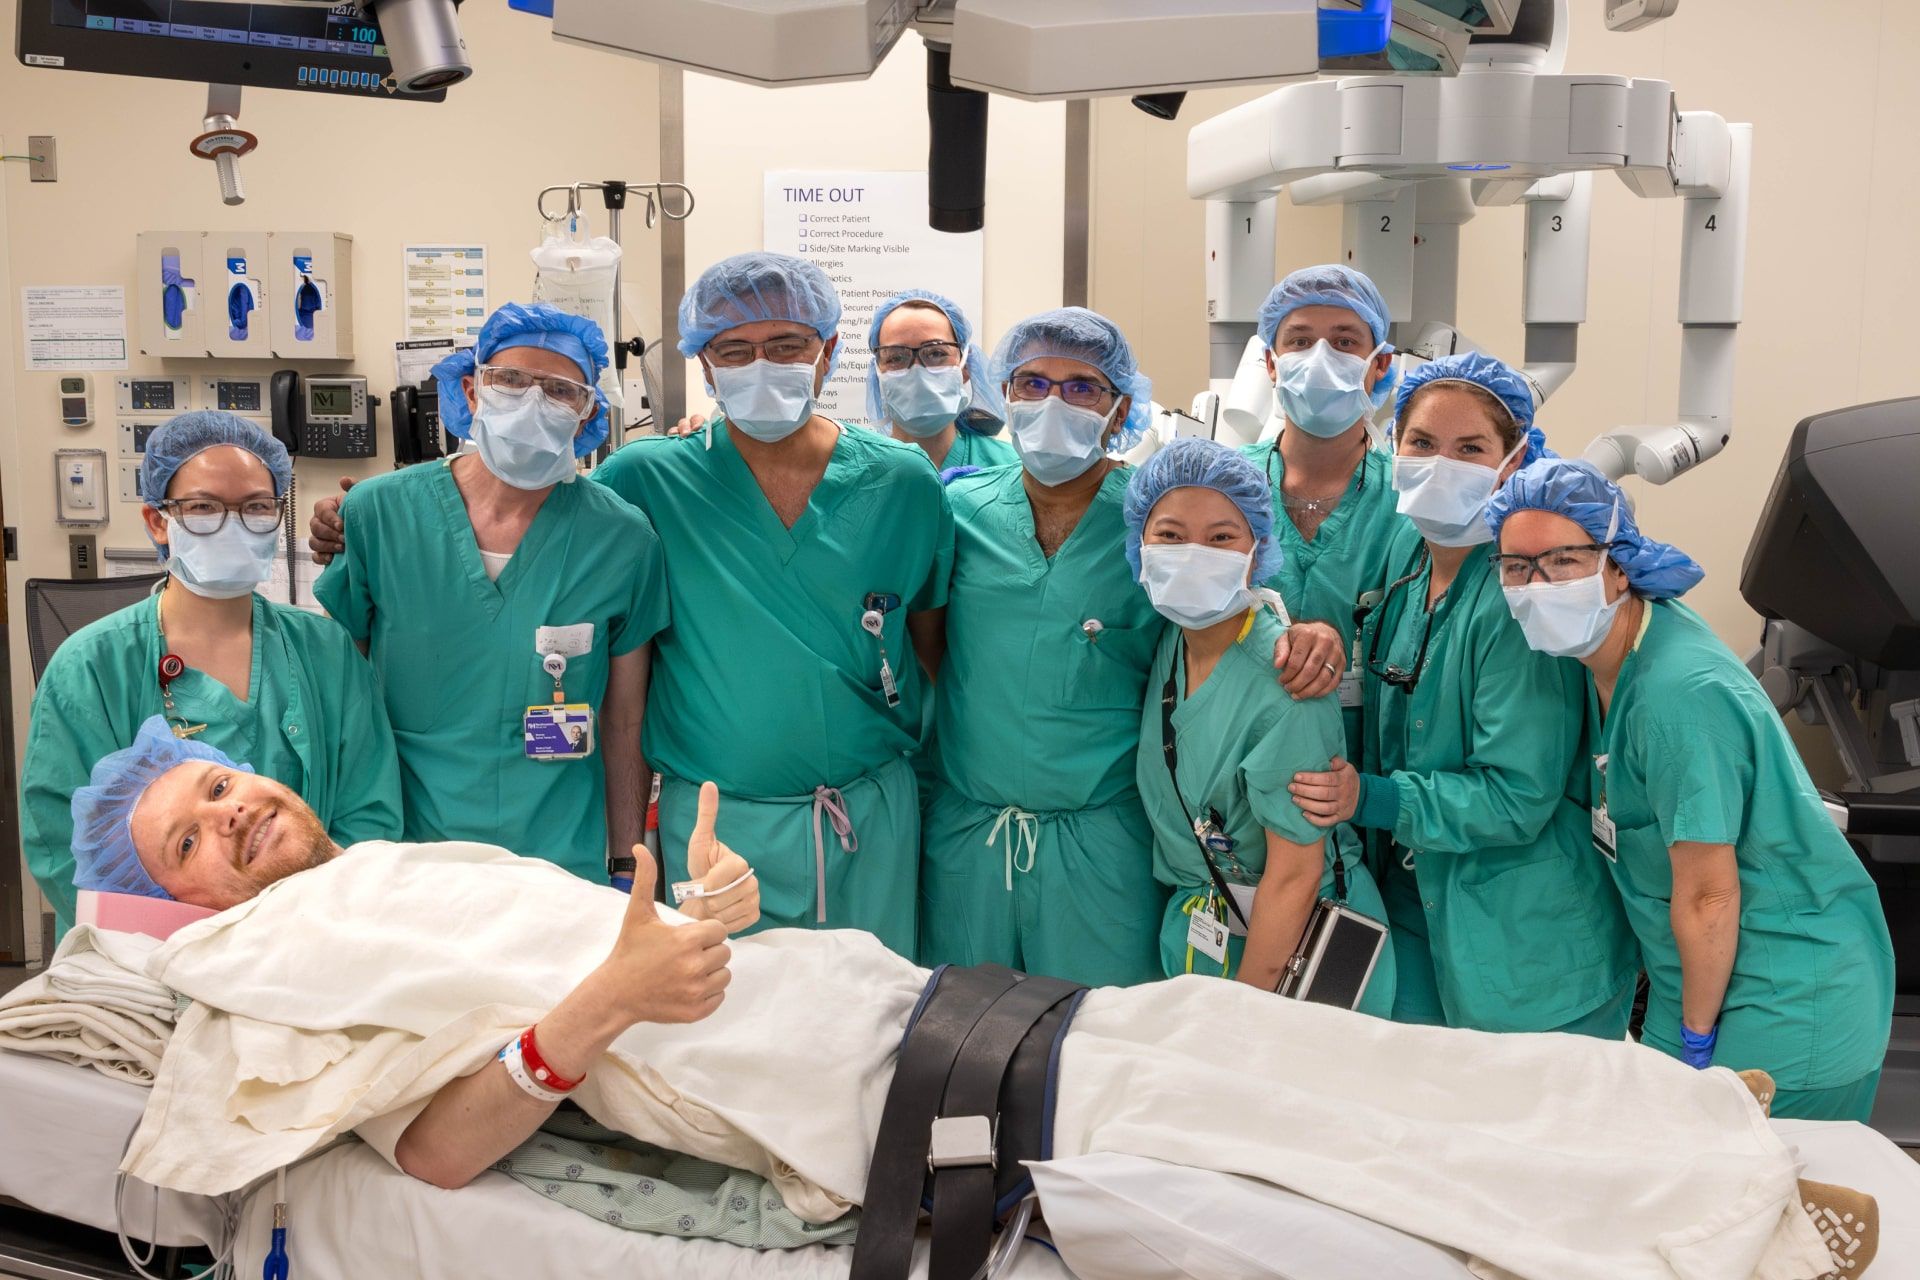 جان نیکلاس و تیم جراحی در اتاق عمل پس از پیوند کلیه بدون بیهوشی